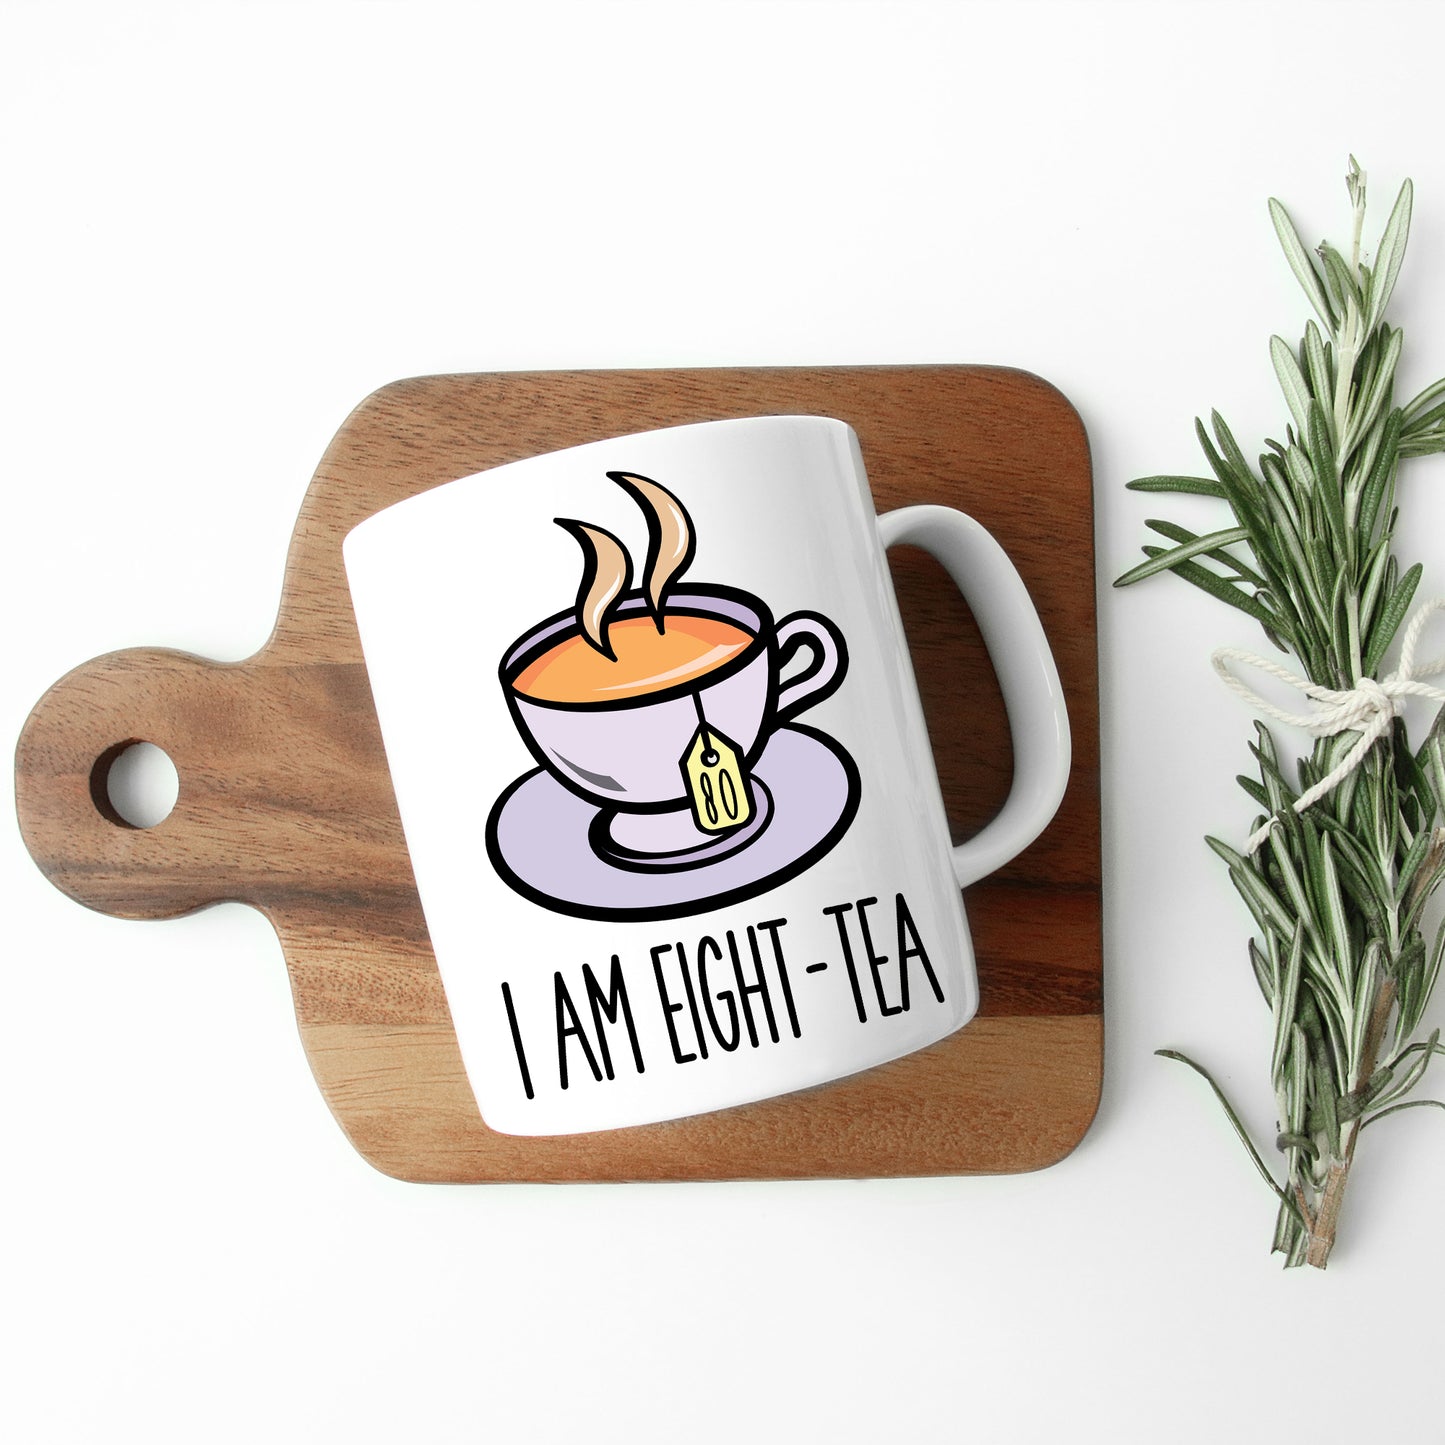 I Am Eighty-Tea Funny 80th Birthday Mug Gift for Tea Lovers  - Always Looking Good -   